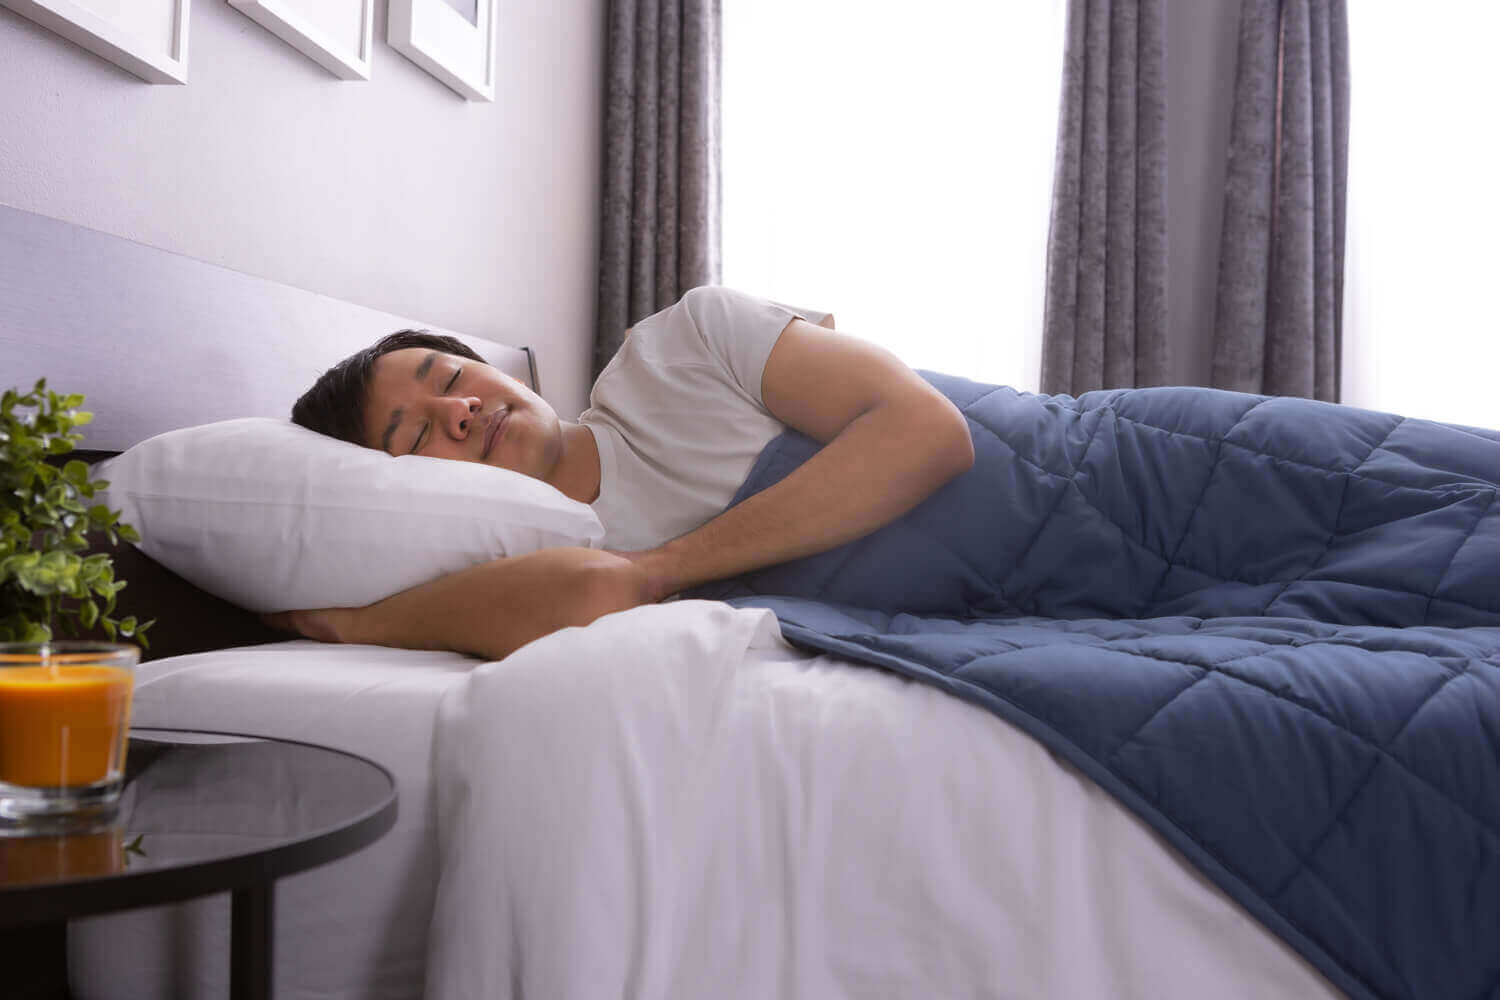 Un homme se repose dans son lit, la couverture lestée classique recouvrant son corps.